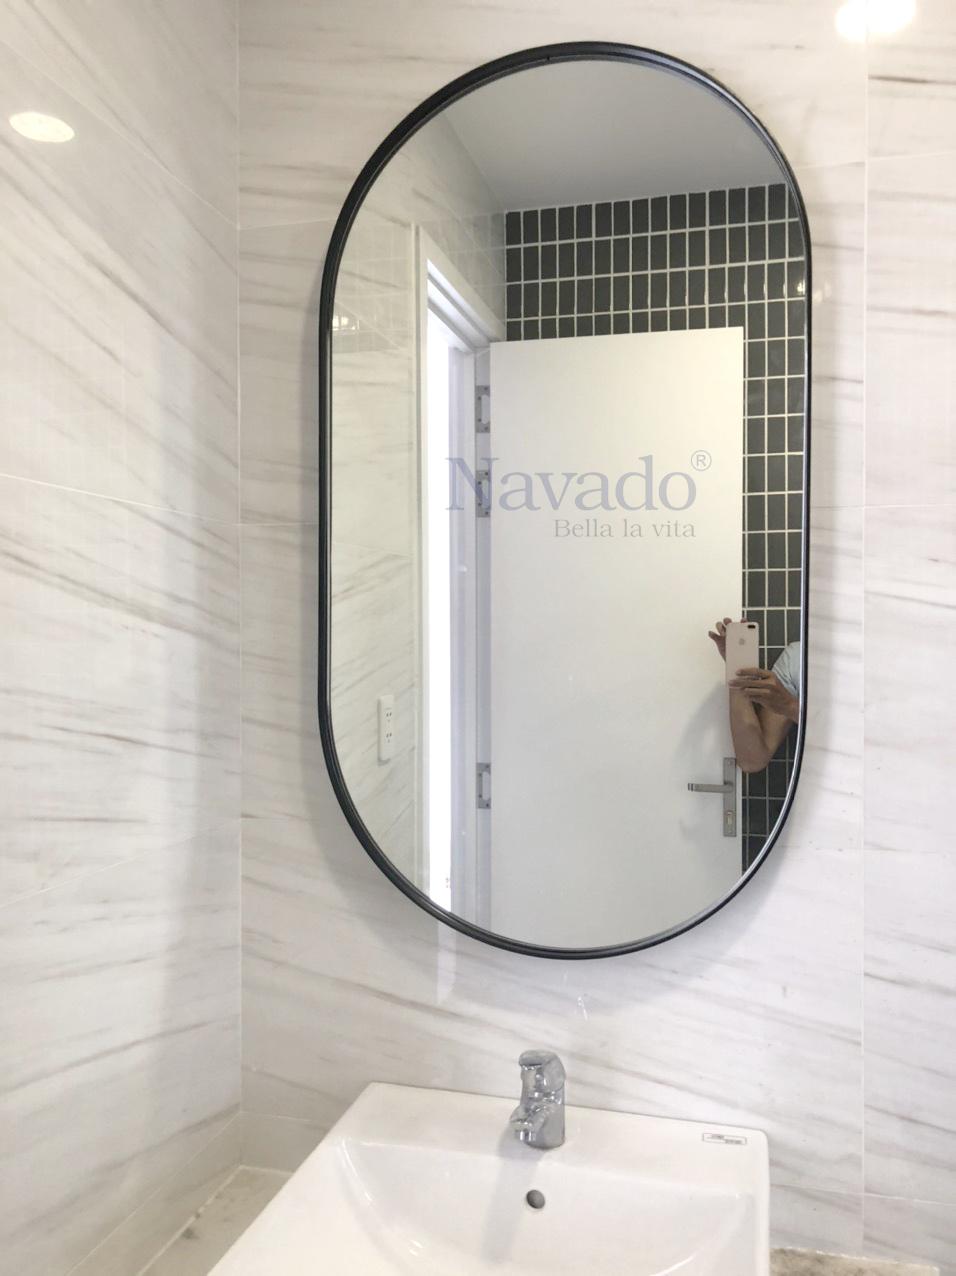 Gương phòng tắm Navado khung thép mạ nghệ thuật cao cấp 2024 mang đến cho không gian phòng tắm của bạn sự sang trọng và tinh tế. Khung thép với lớp mạ nghệ thuật giúp sản phẩm có vẻ ngoài rất đẹp mắt và độ bền cao. Sự kết hợp giữa kiểu dáng hiện đại và chất liệu cao cấp là điểm nhấn của sản phẩm, hứa hẹn mang lại trải nghiệm thú vị cho người dùng.